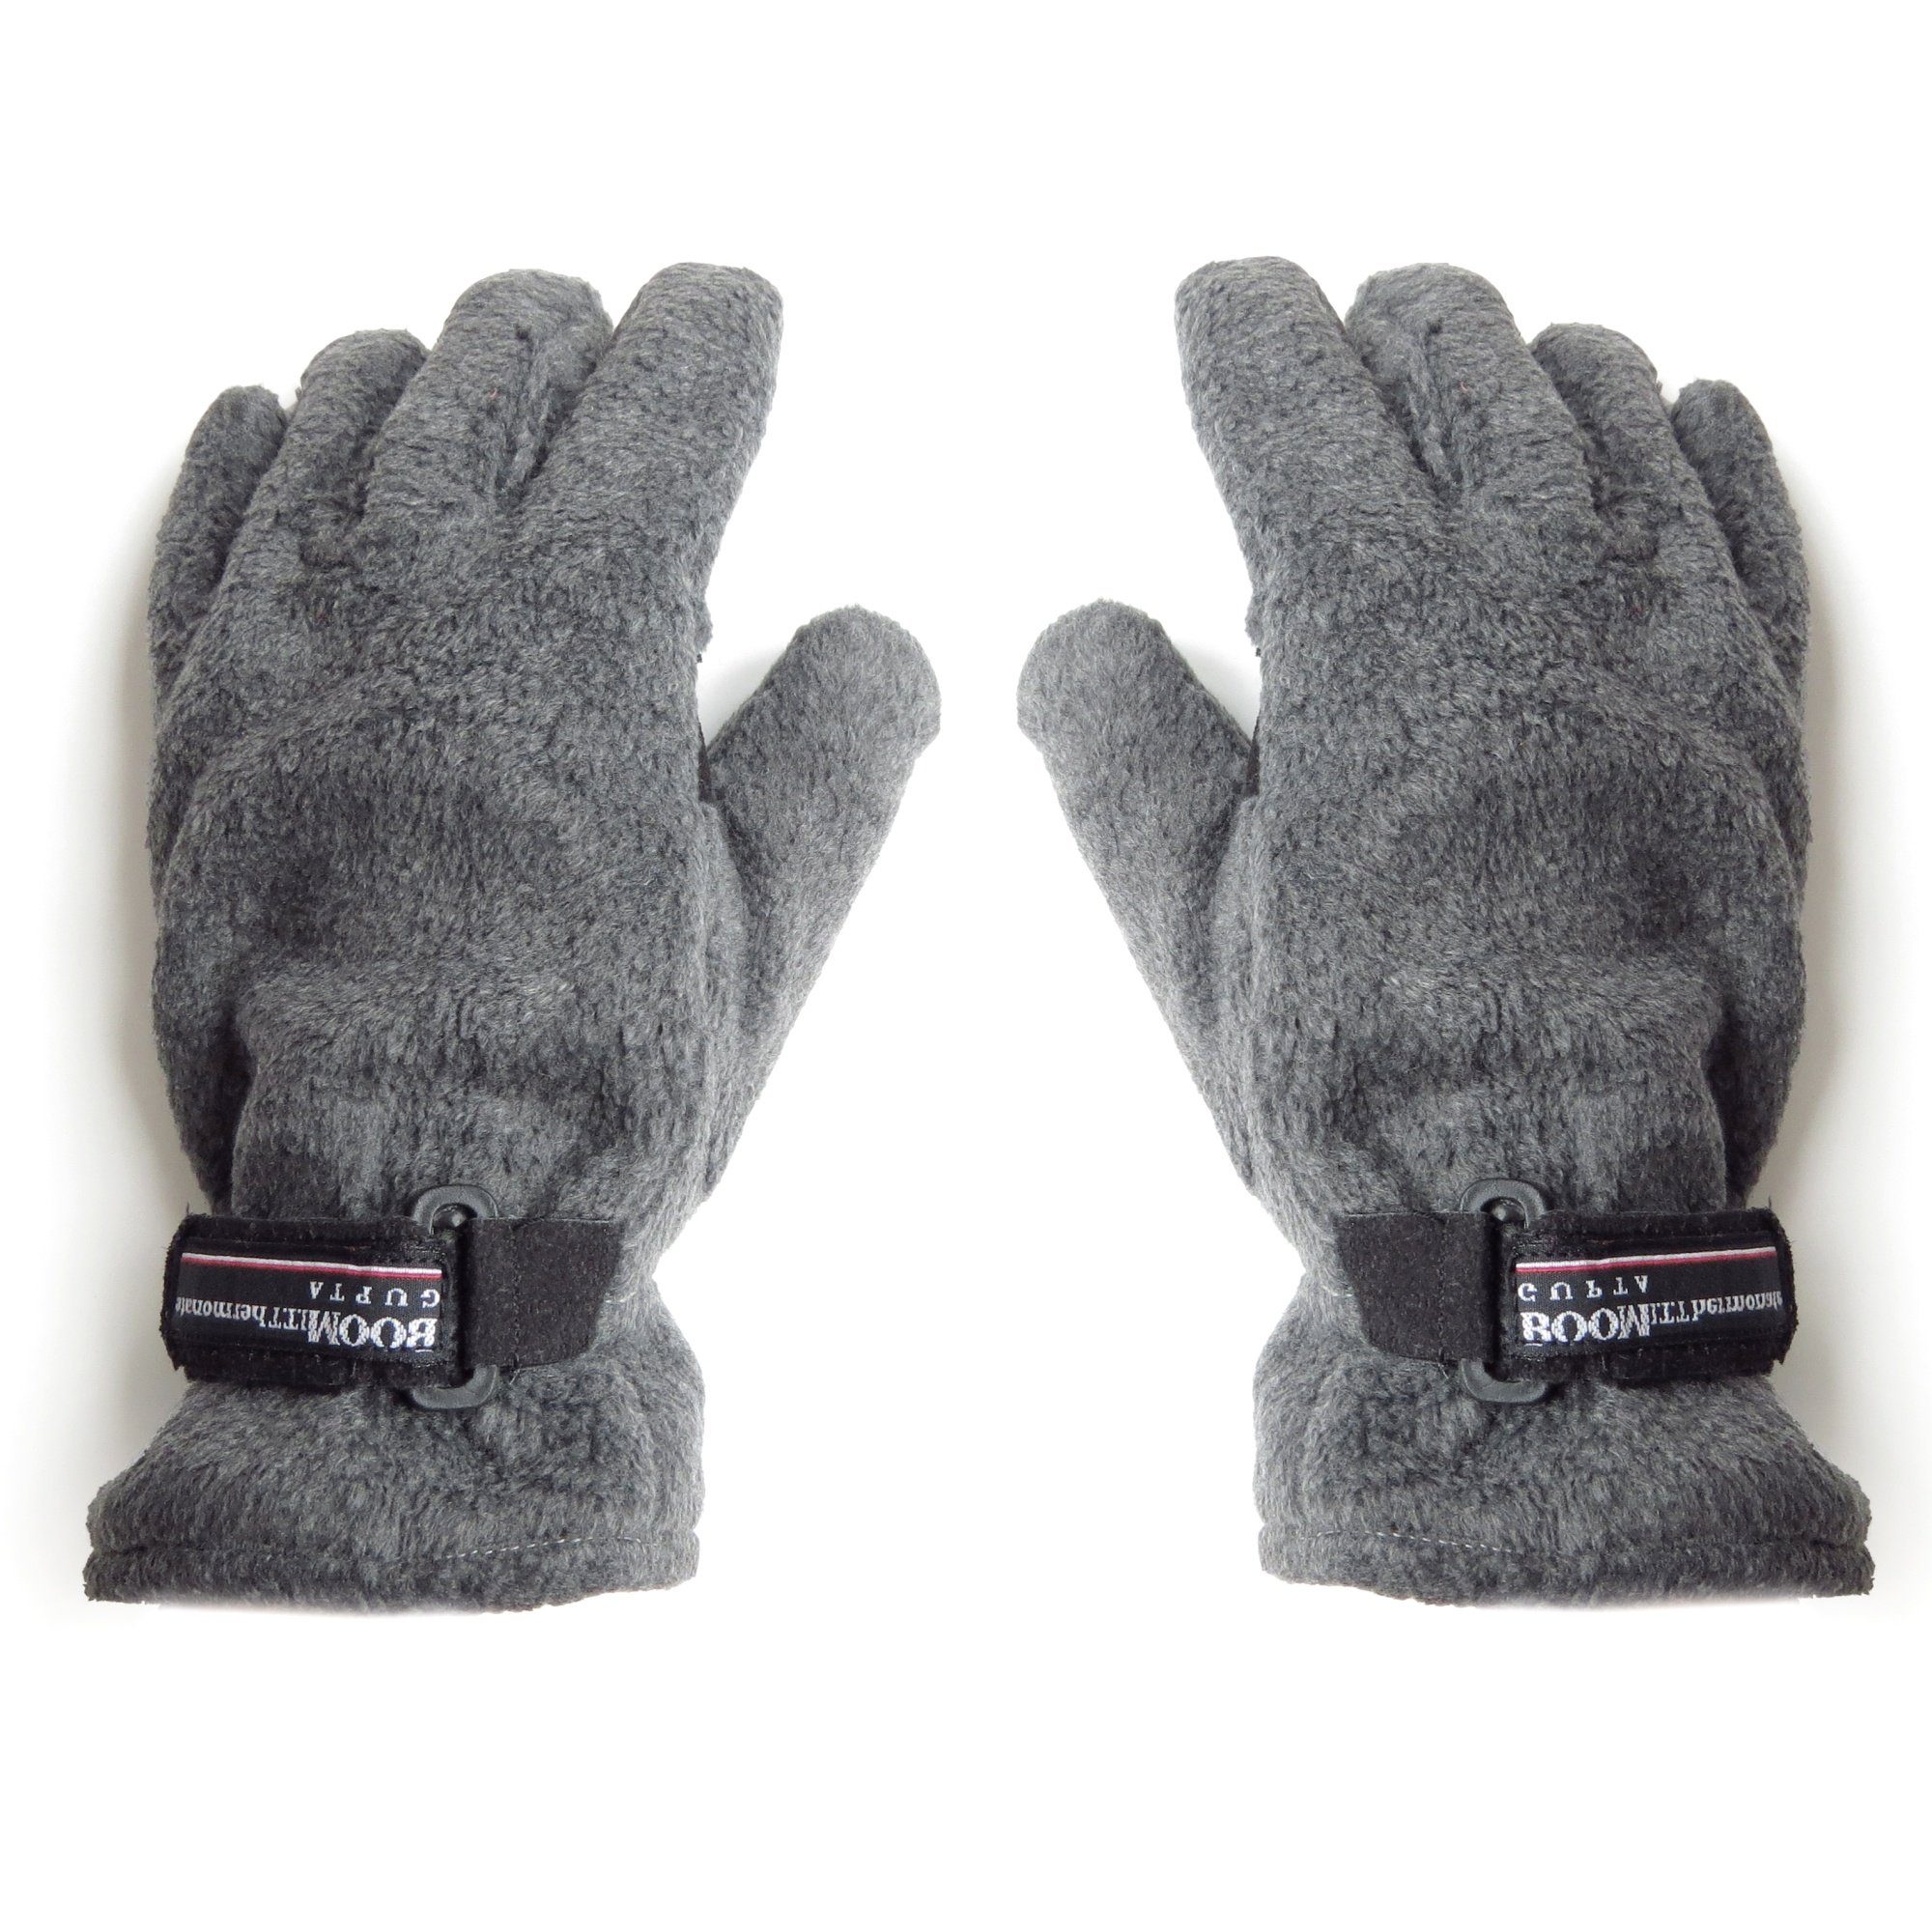 Sonia Originelli Strickhandschuhe Handschuhe Winter Finger Fleece Schwarz Klettverschluss Farbe: Schwarz, Hellgrau hgrau